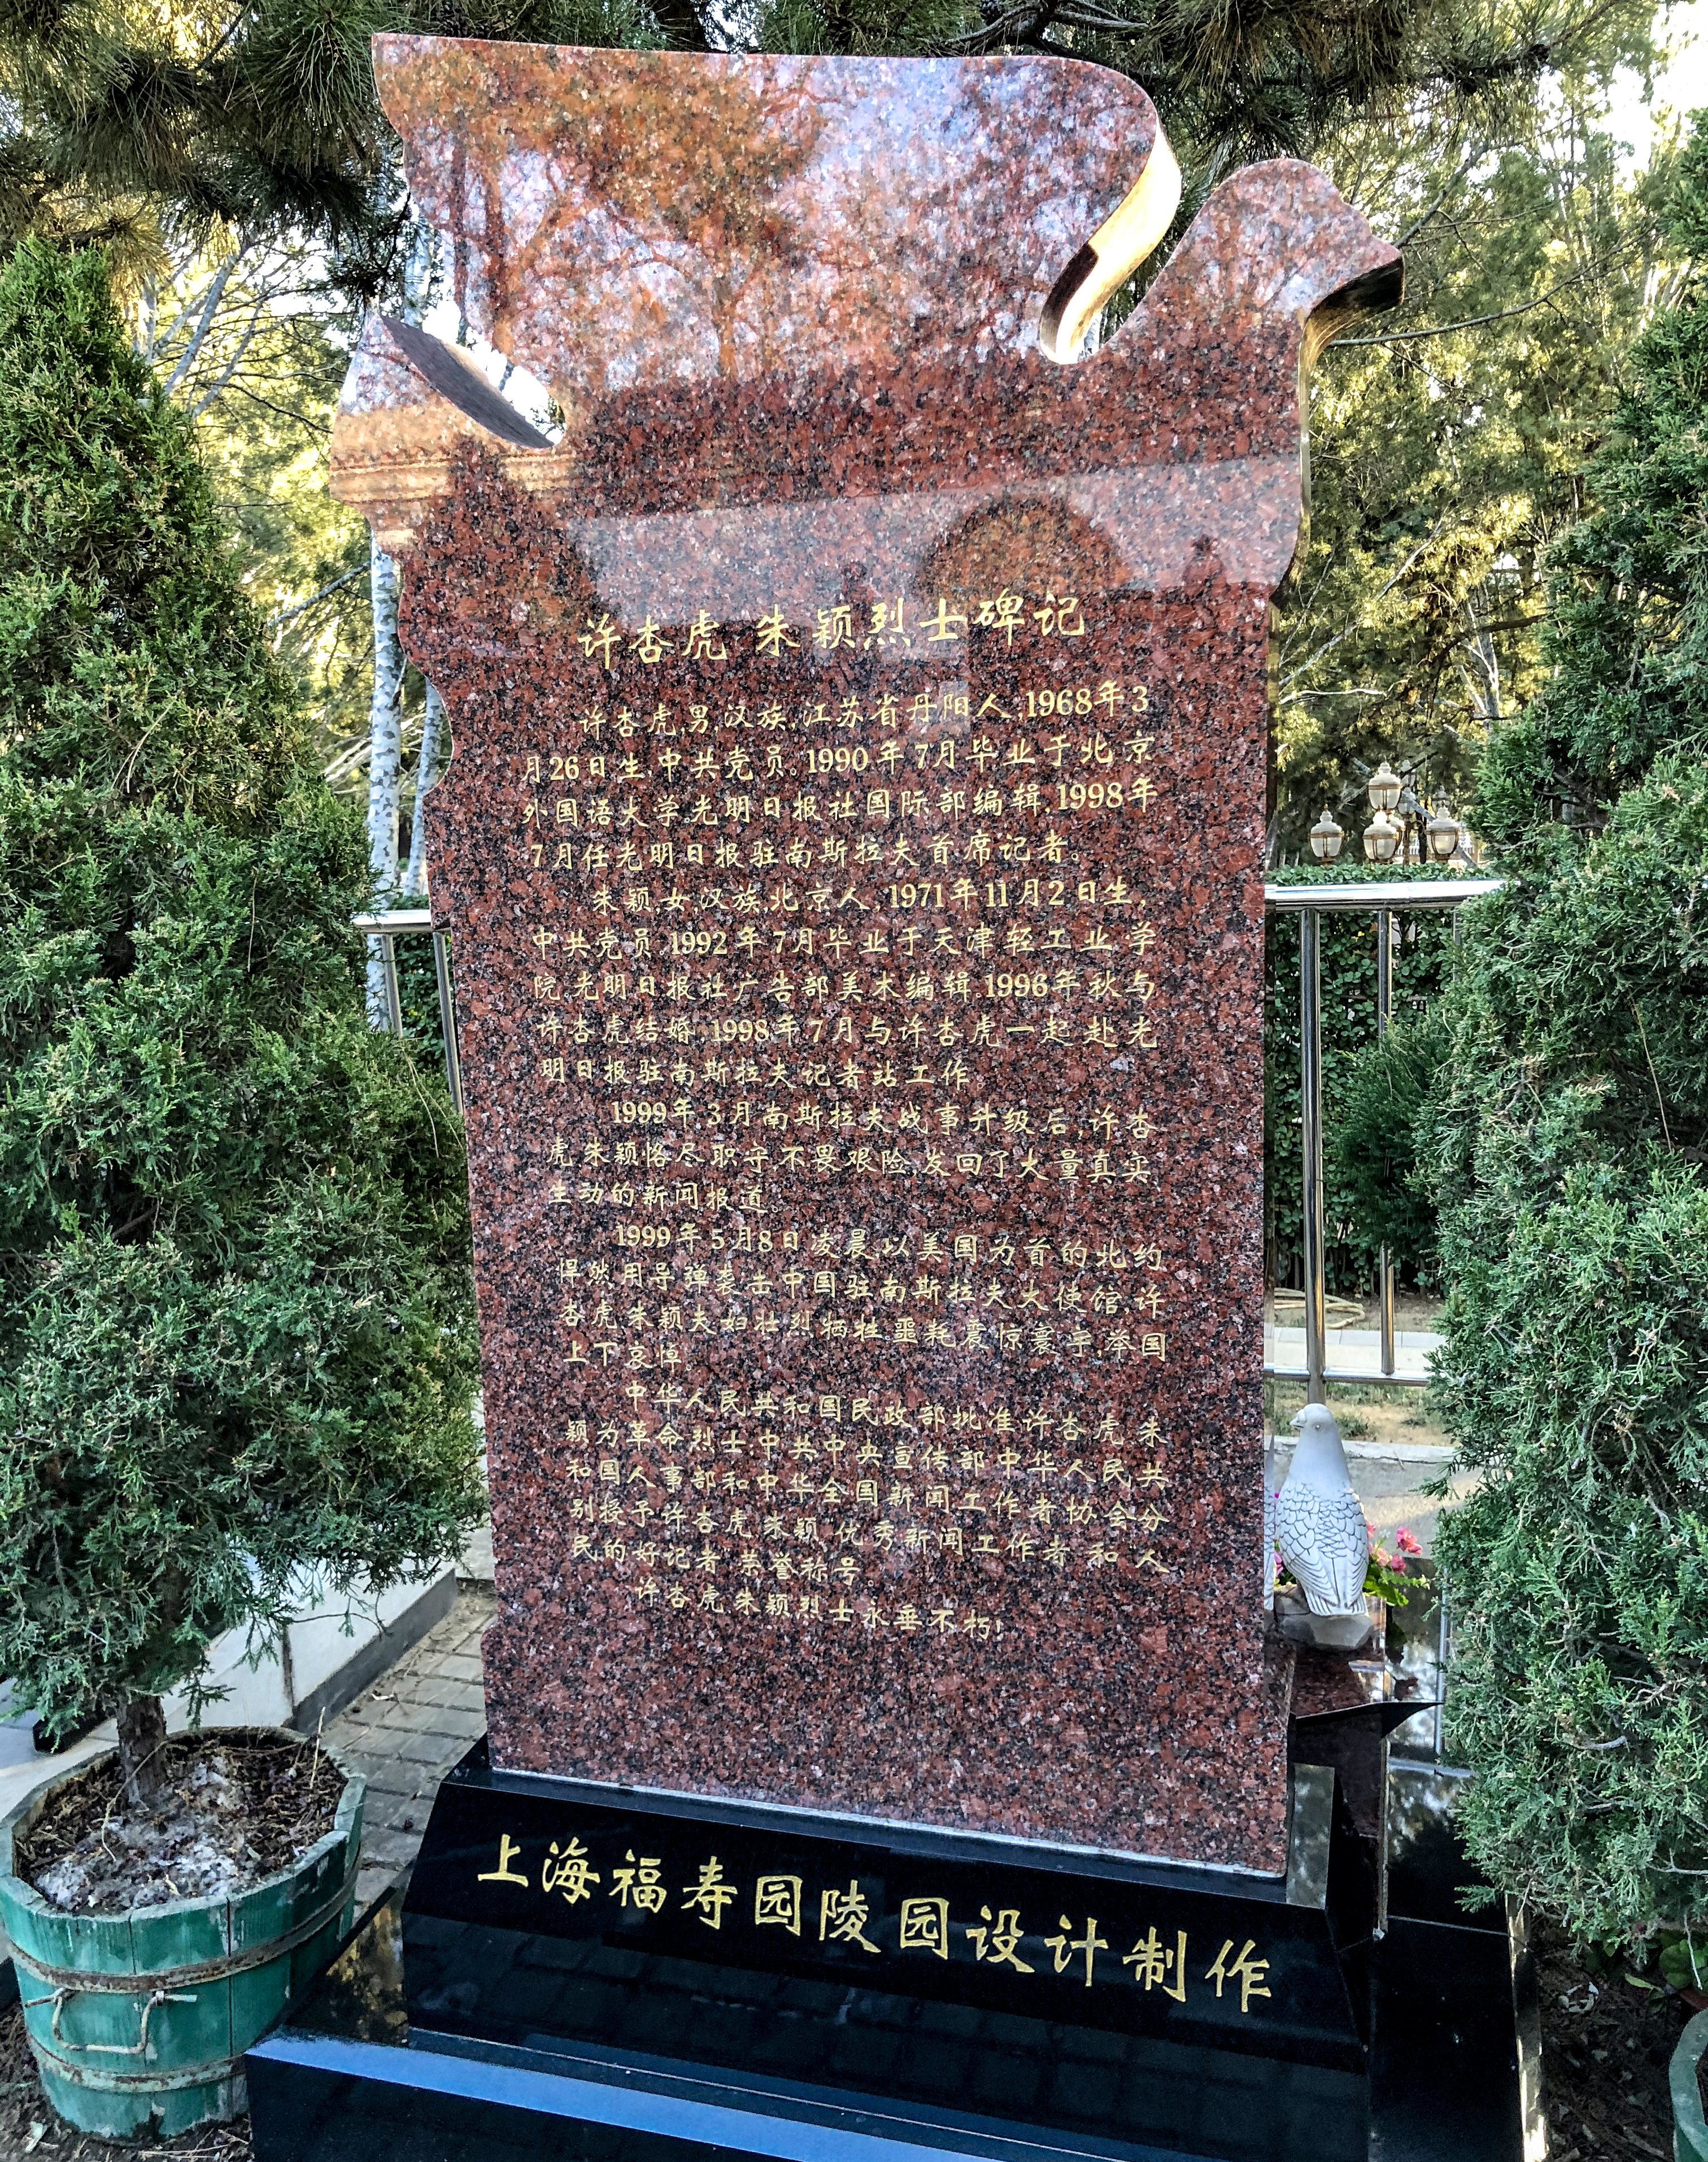 File Grave Of Xu Xinghu And Zhu Ying At Babaoshan 20191204151811